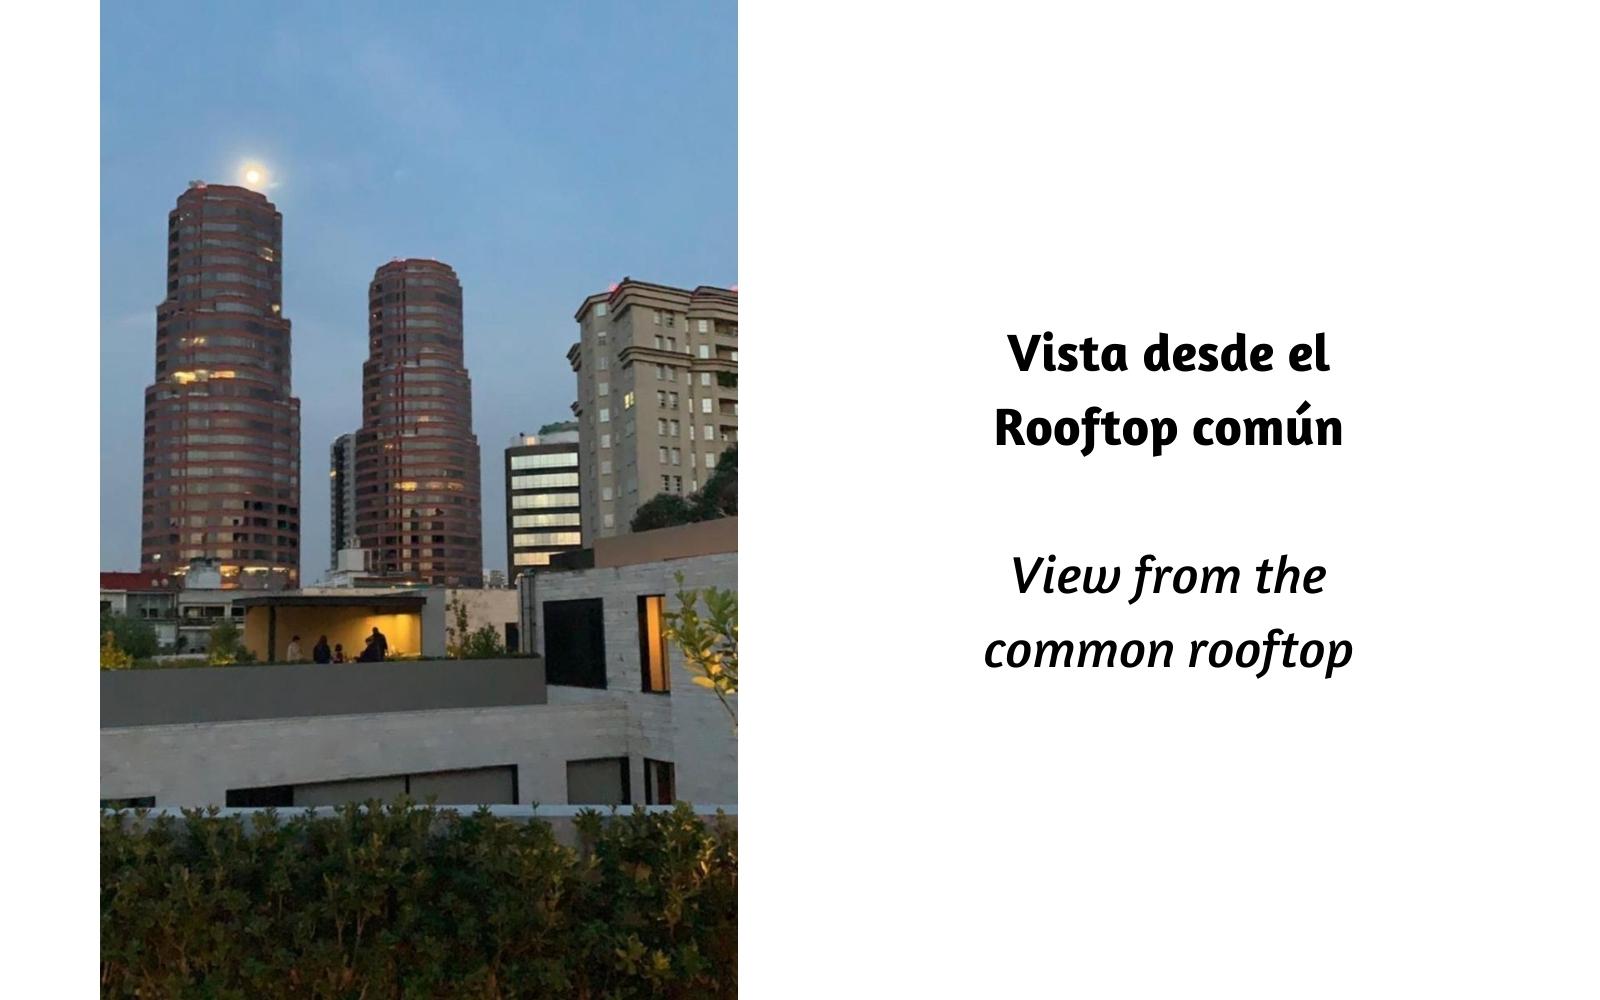 Apartment with terrace, pool, central park, pet park, sale Polanco CDMX.